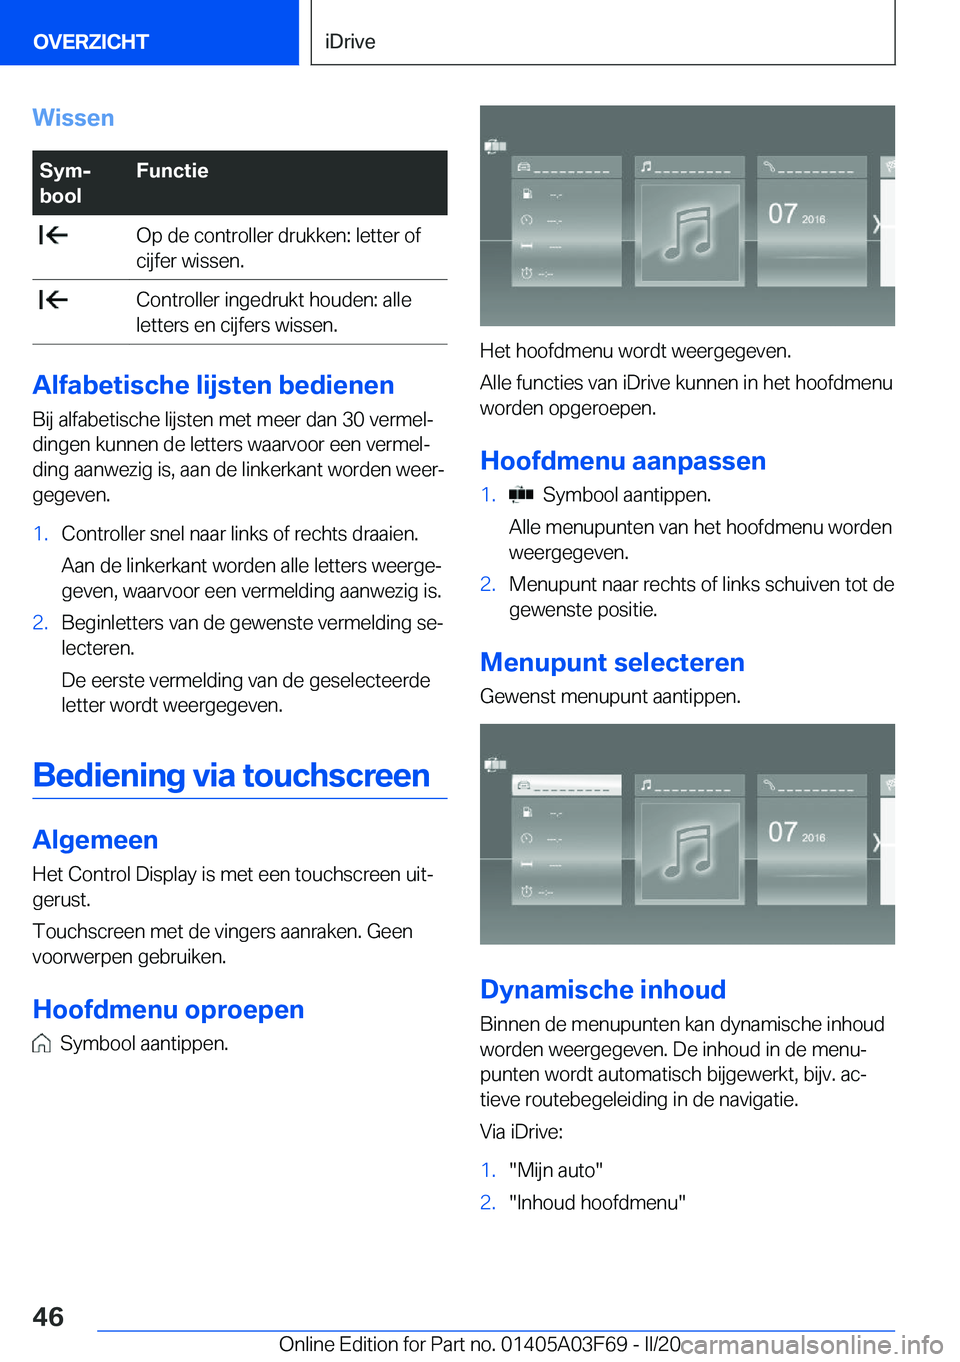 BMW 3 SERIES 2020  Instructieboekjes (in Dutch) �W�i�s�s�e�n�S�y�mj
�b�o�o�l�F�u�n�c�t�i�e��O�p��d�e��c�o�n�t�r�o�l�l�e�r��d�r�u�k�k�e�n�:��l�e�t�t�e�r��o�f
�c�i�j�f�e�r��w�i�s�s�e�n�.��C�o�n�t�r�o�l�l�e�r��i�n�g�e�d�r�u�k�t��h�o�u�d�e�n